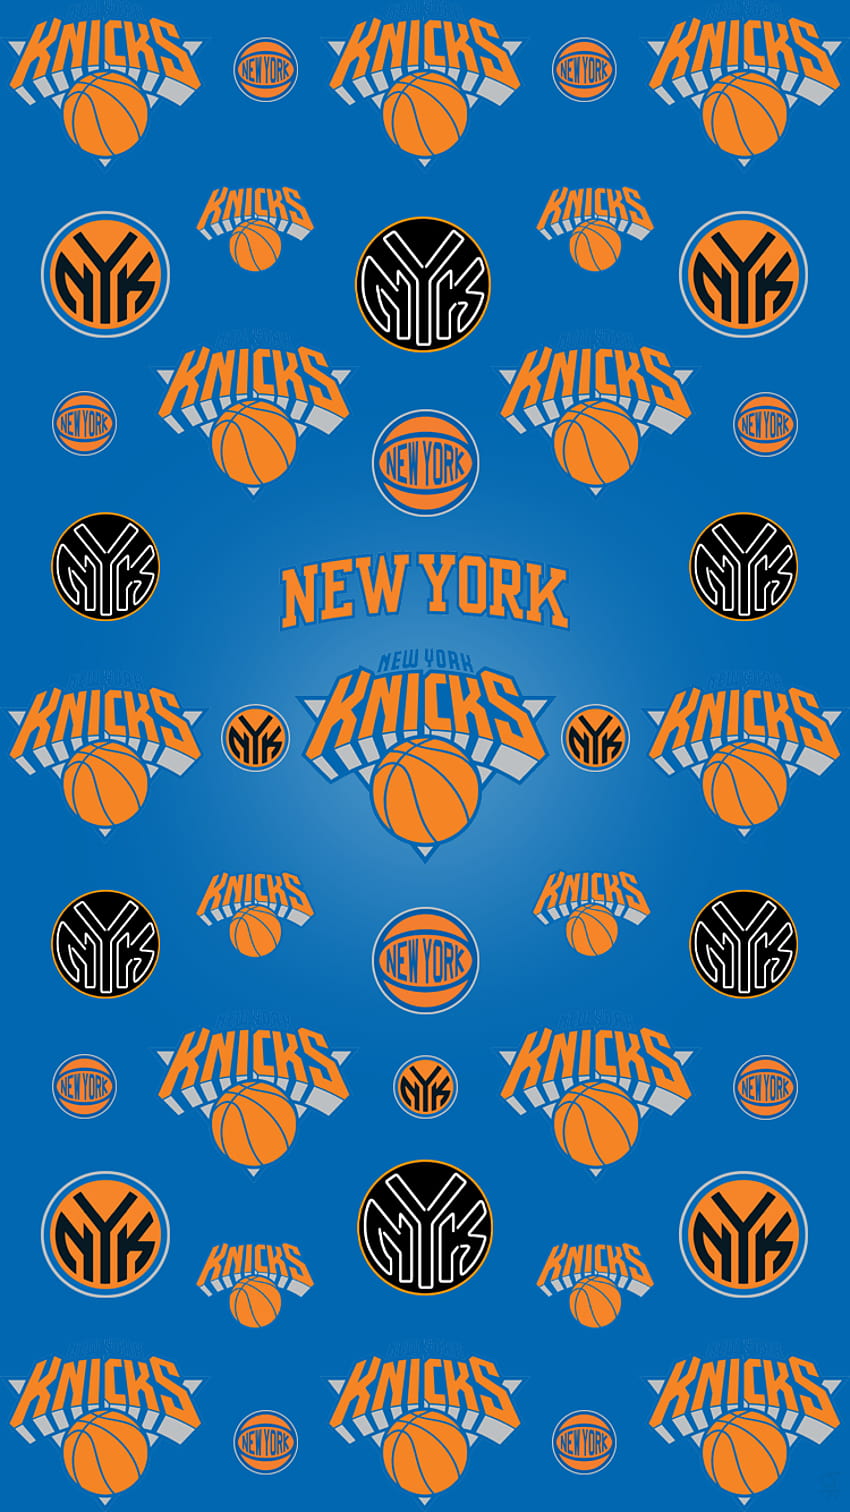 Iphone de los Knicks de Nueva York, ny knicks fondo de pantalla del teléfono